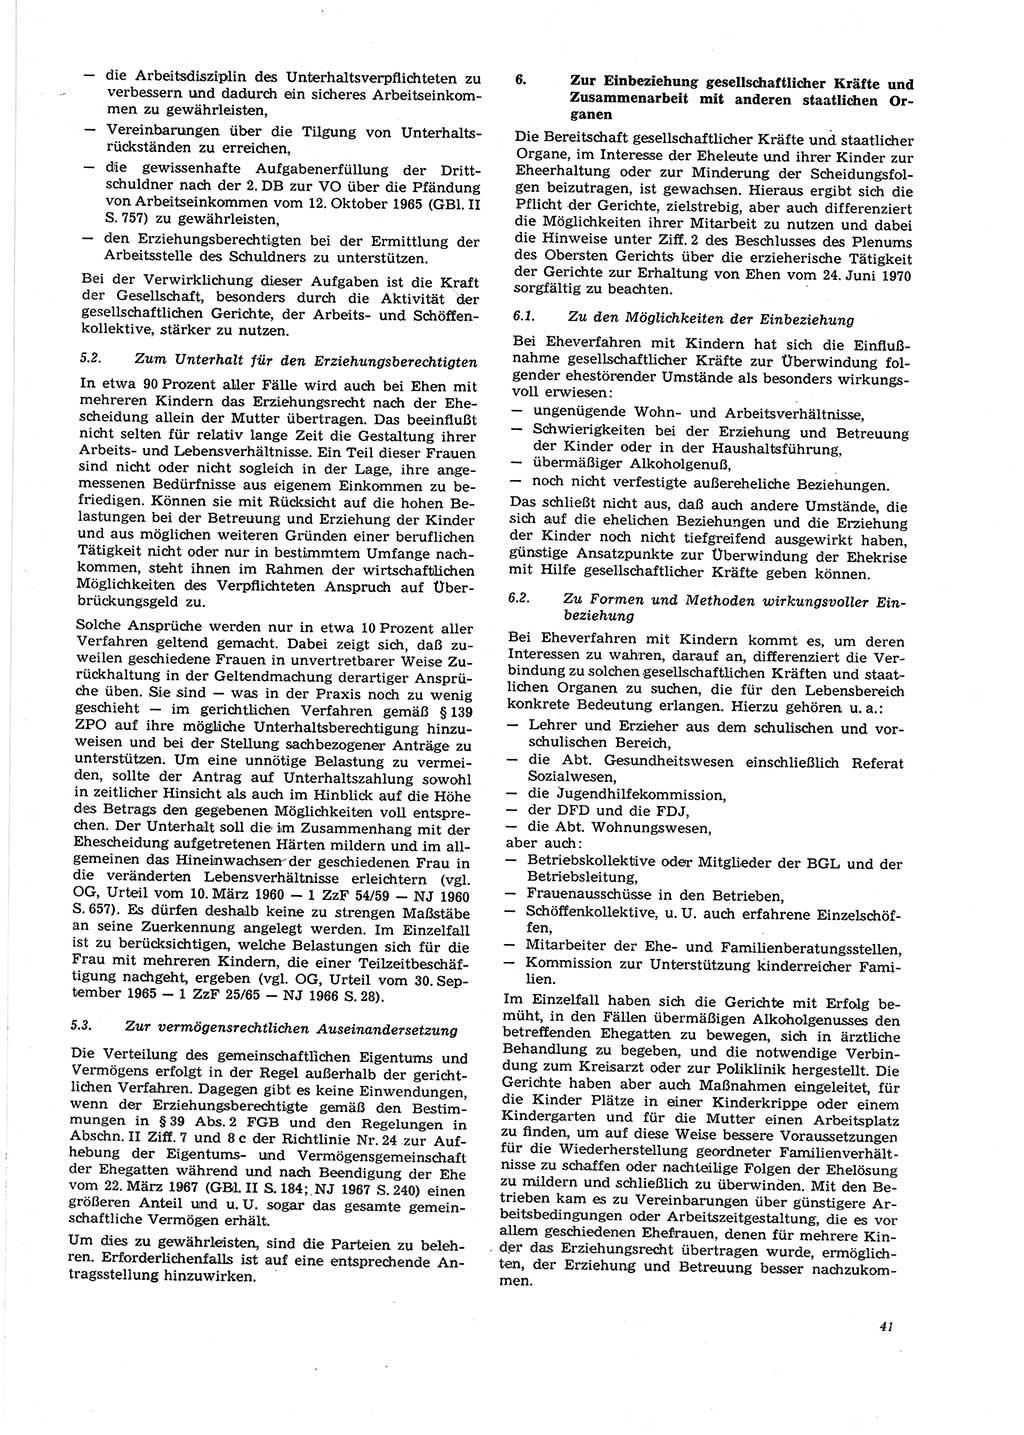 Neue Justiz (NJ), Zeitschrift für Recht und Rechtswissenschaft [Deutsche Demokratische Republik (DDR)], 27. Jahrgang 1973, Seite 41 (NJ DDR 1973, S. 41)